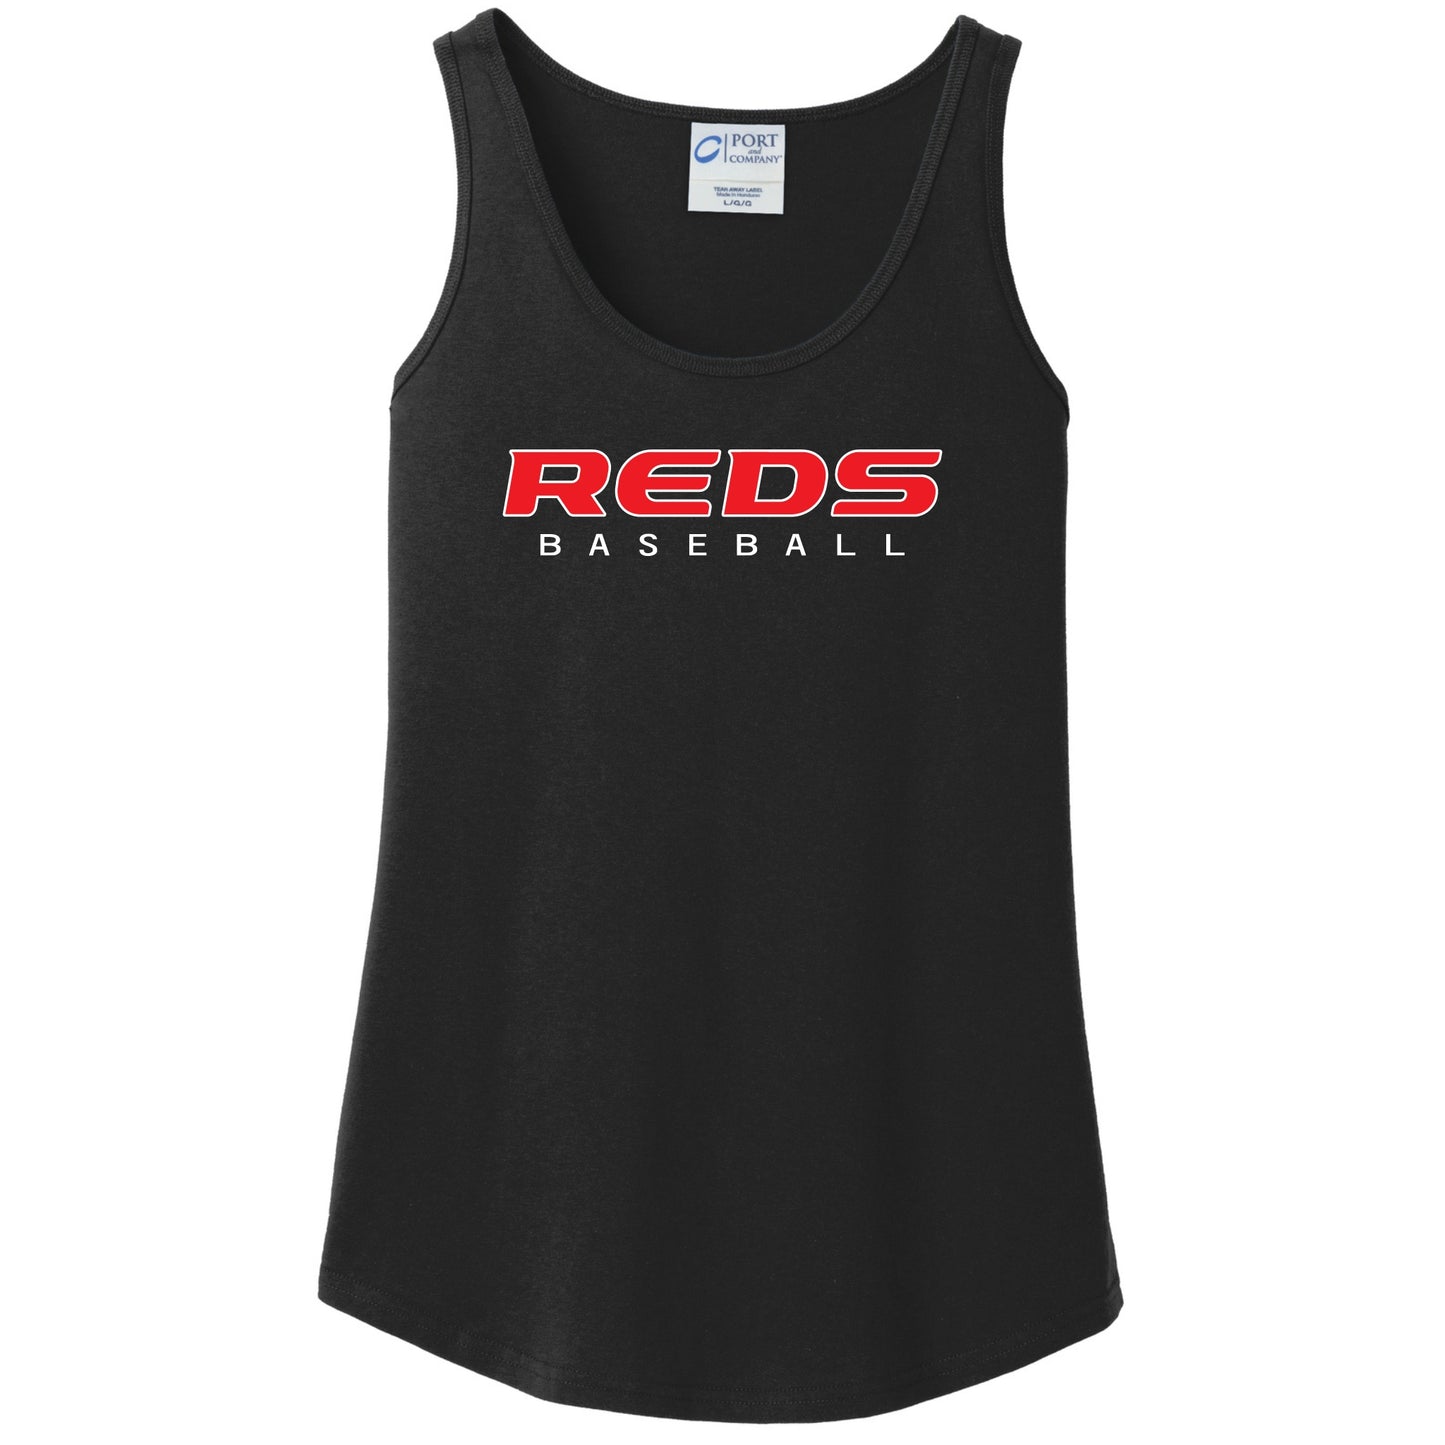 Reds Baseball Women's Tank